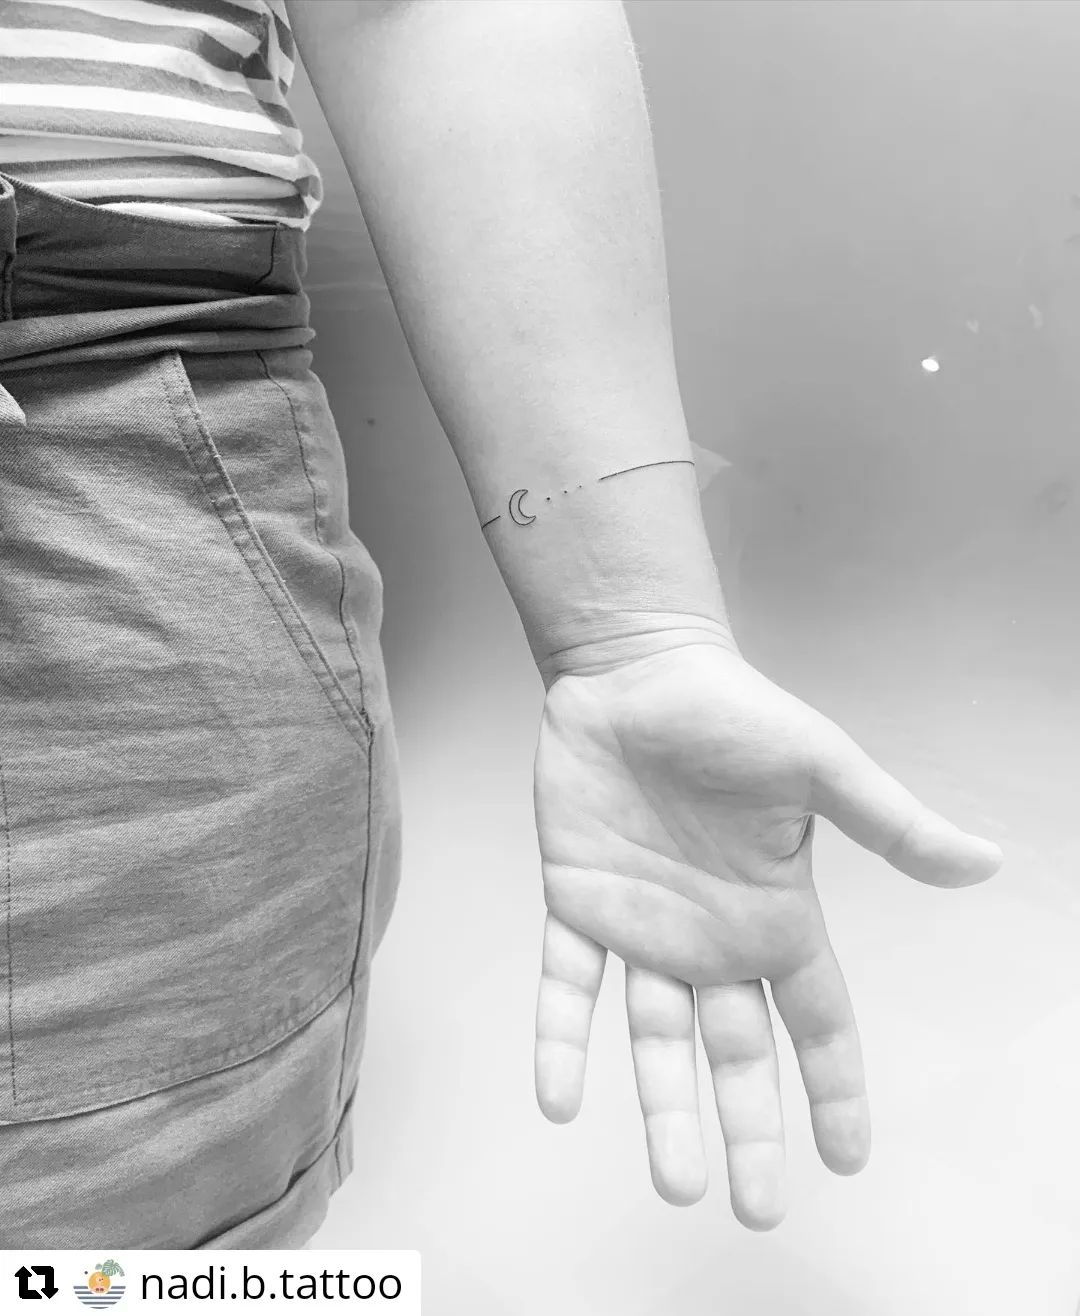 Von @nadi.b.tattoo
• • • • • •
 ARM RING LOVE

#handpoked #nomachine #handpoke #